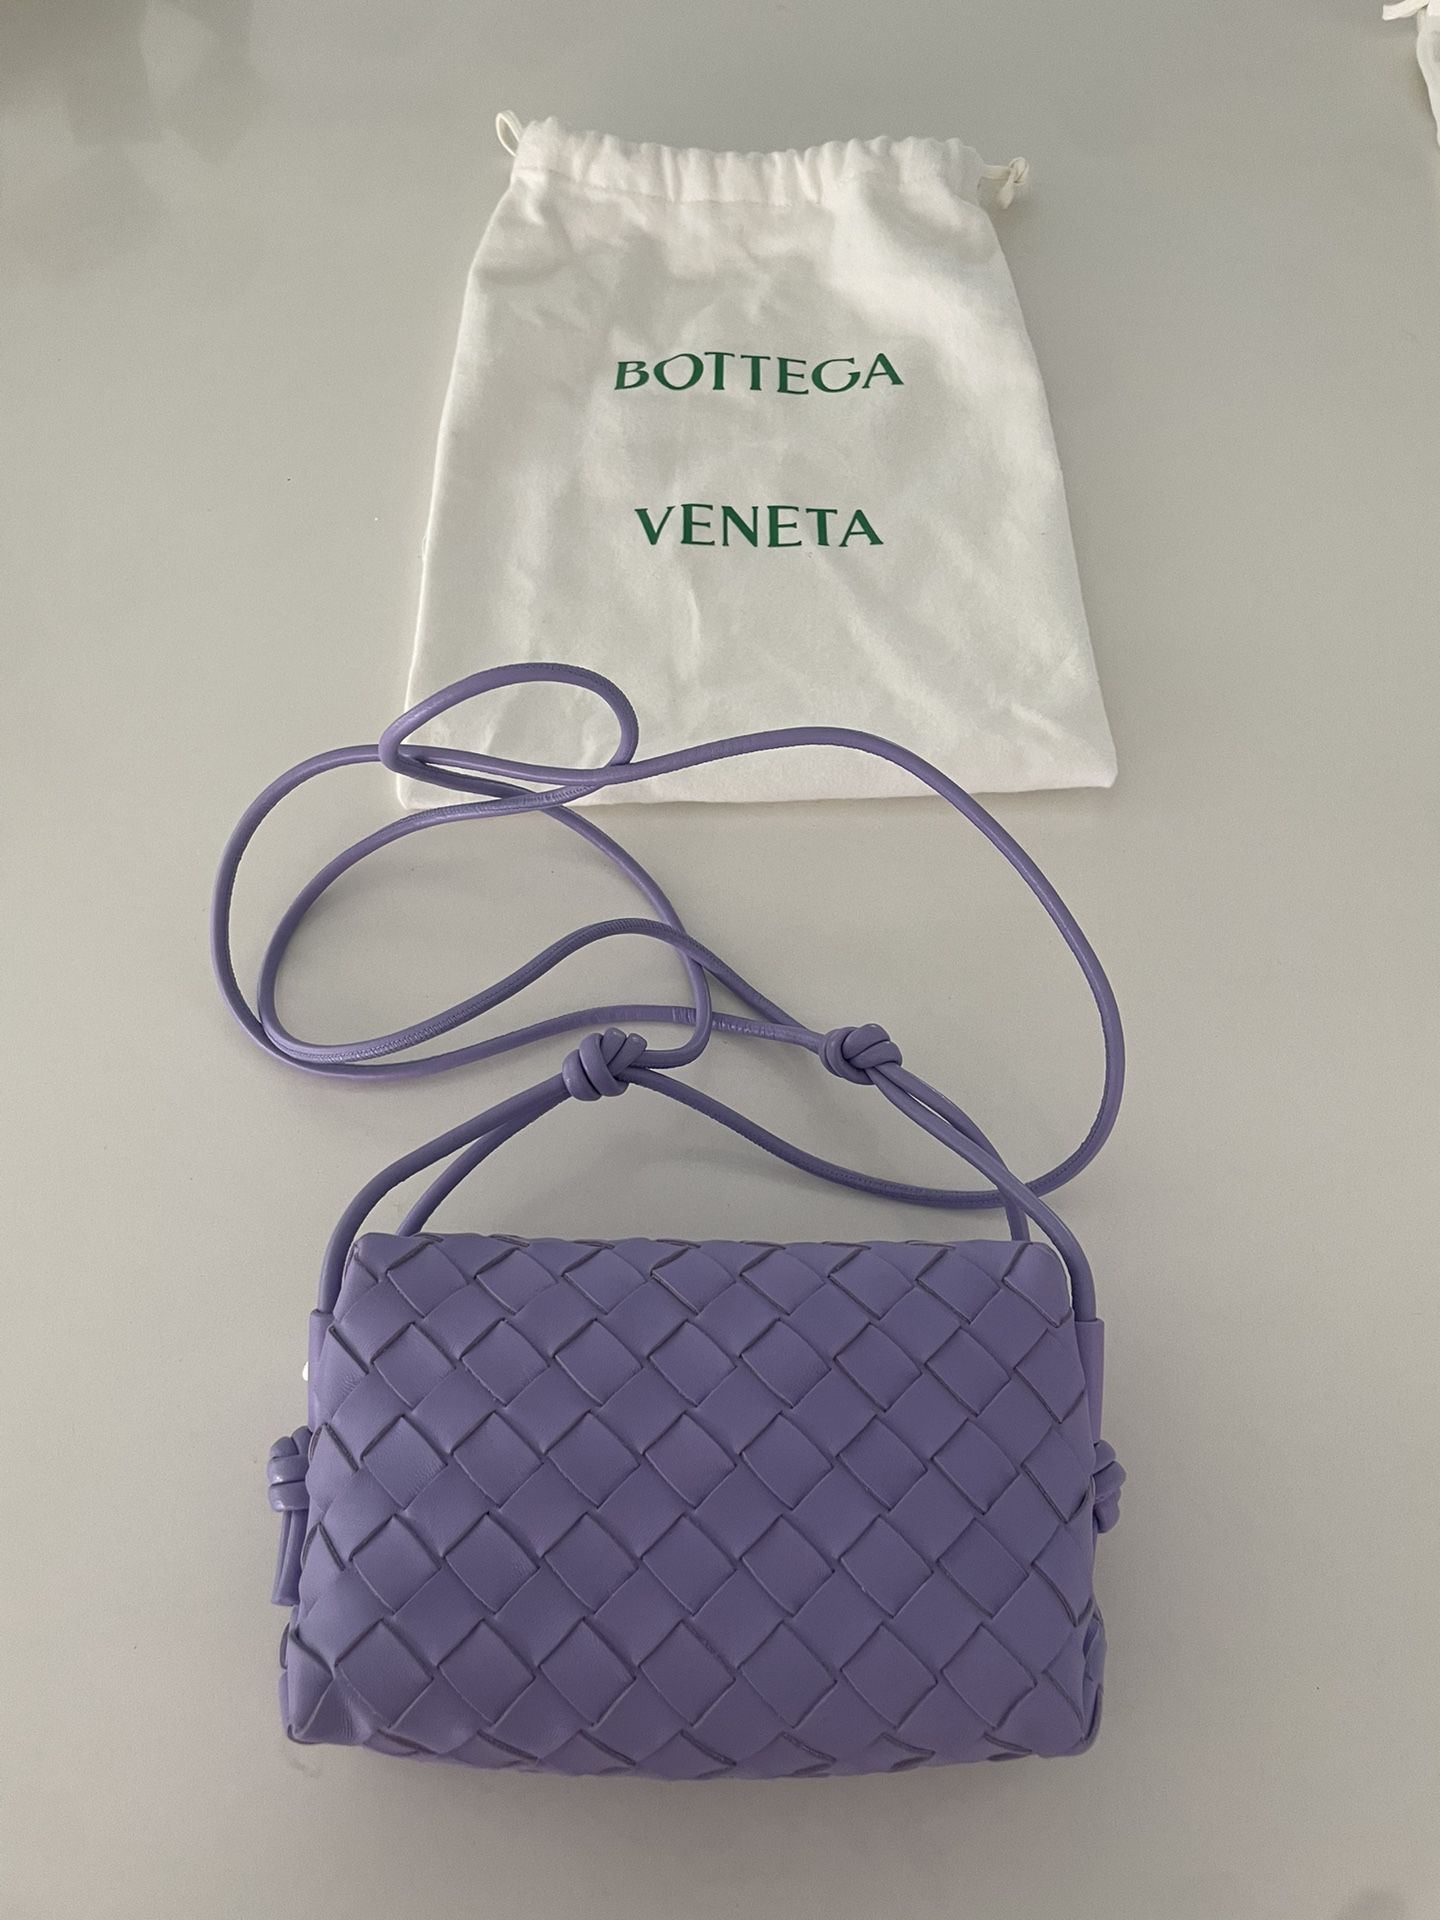 Bottega Veneta Bag 